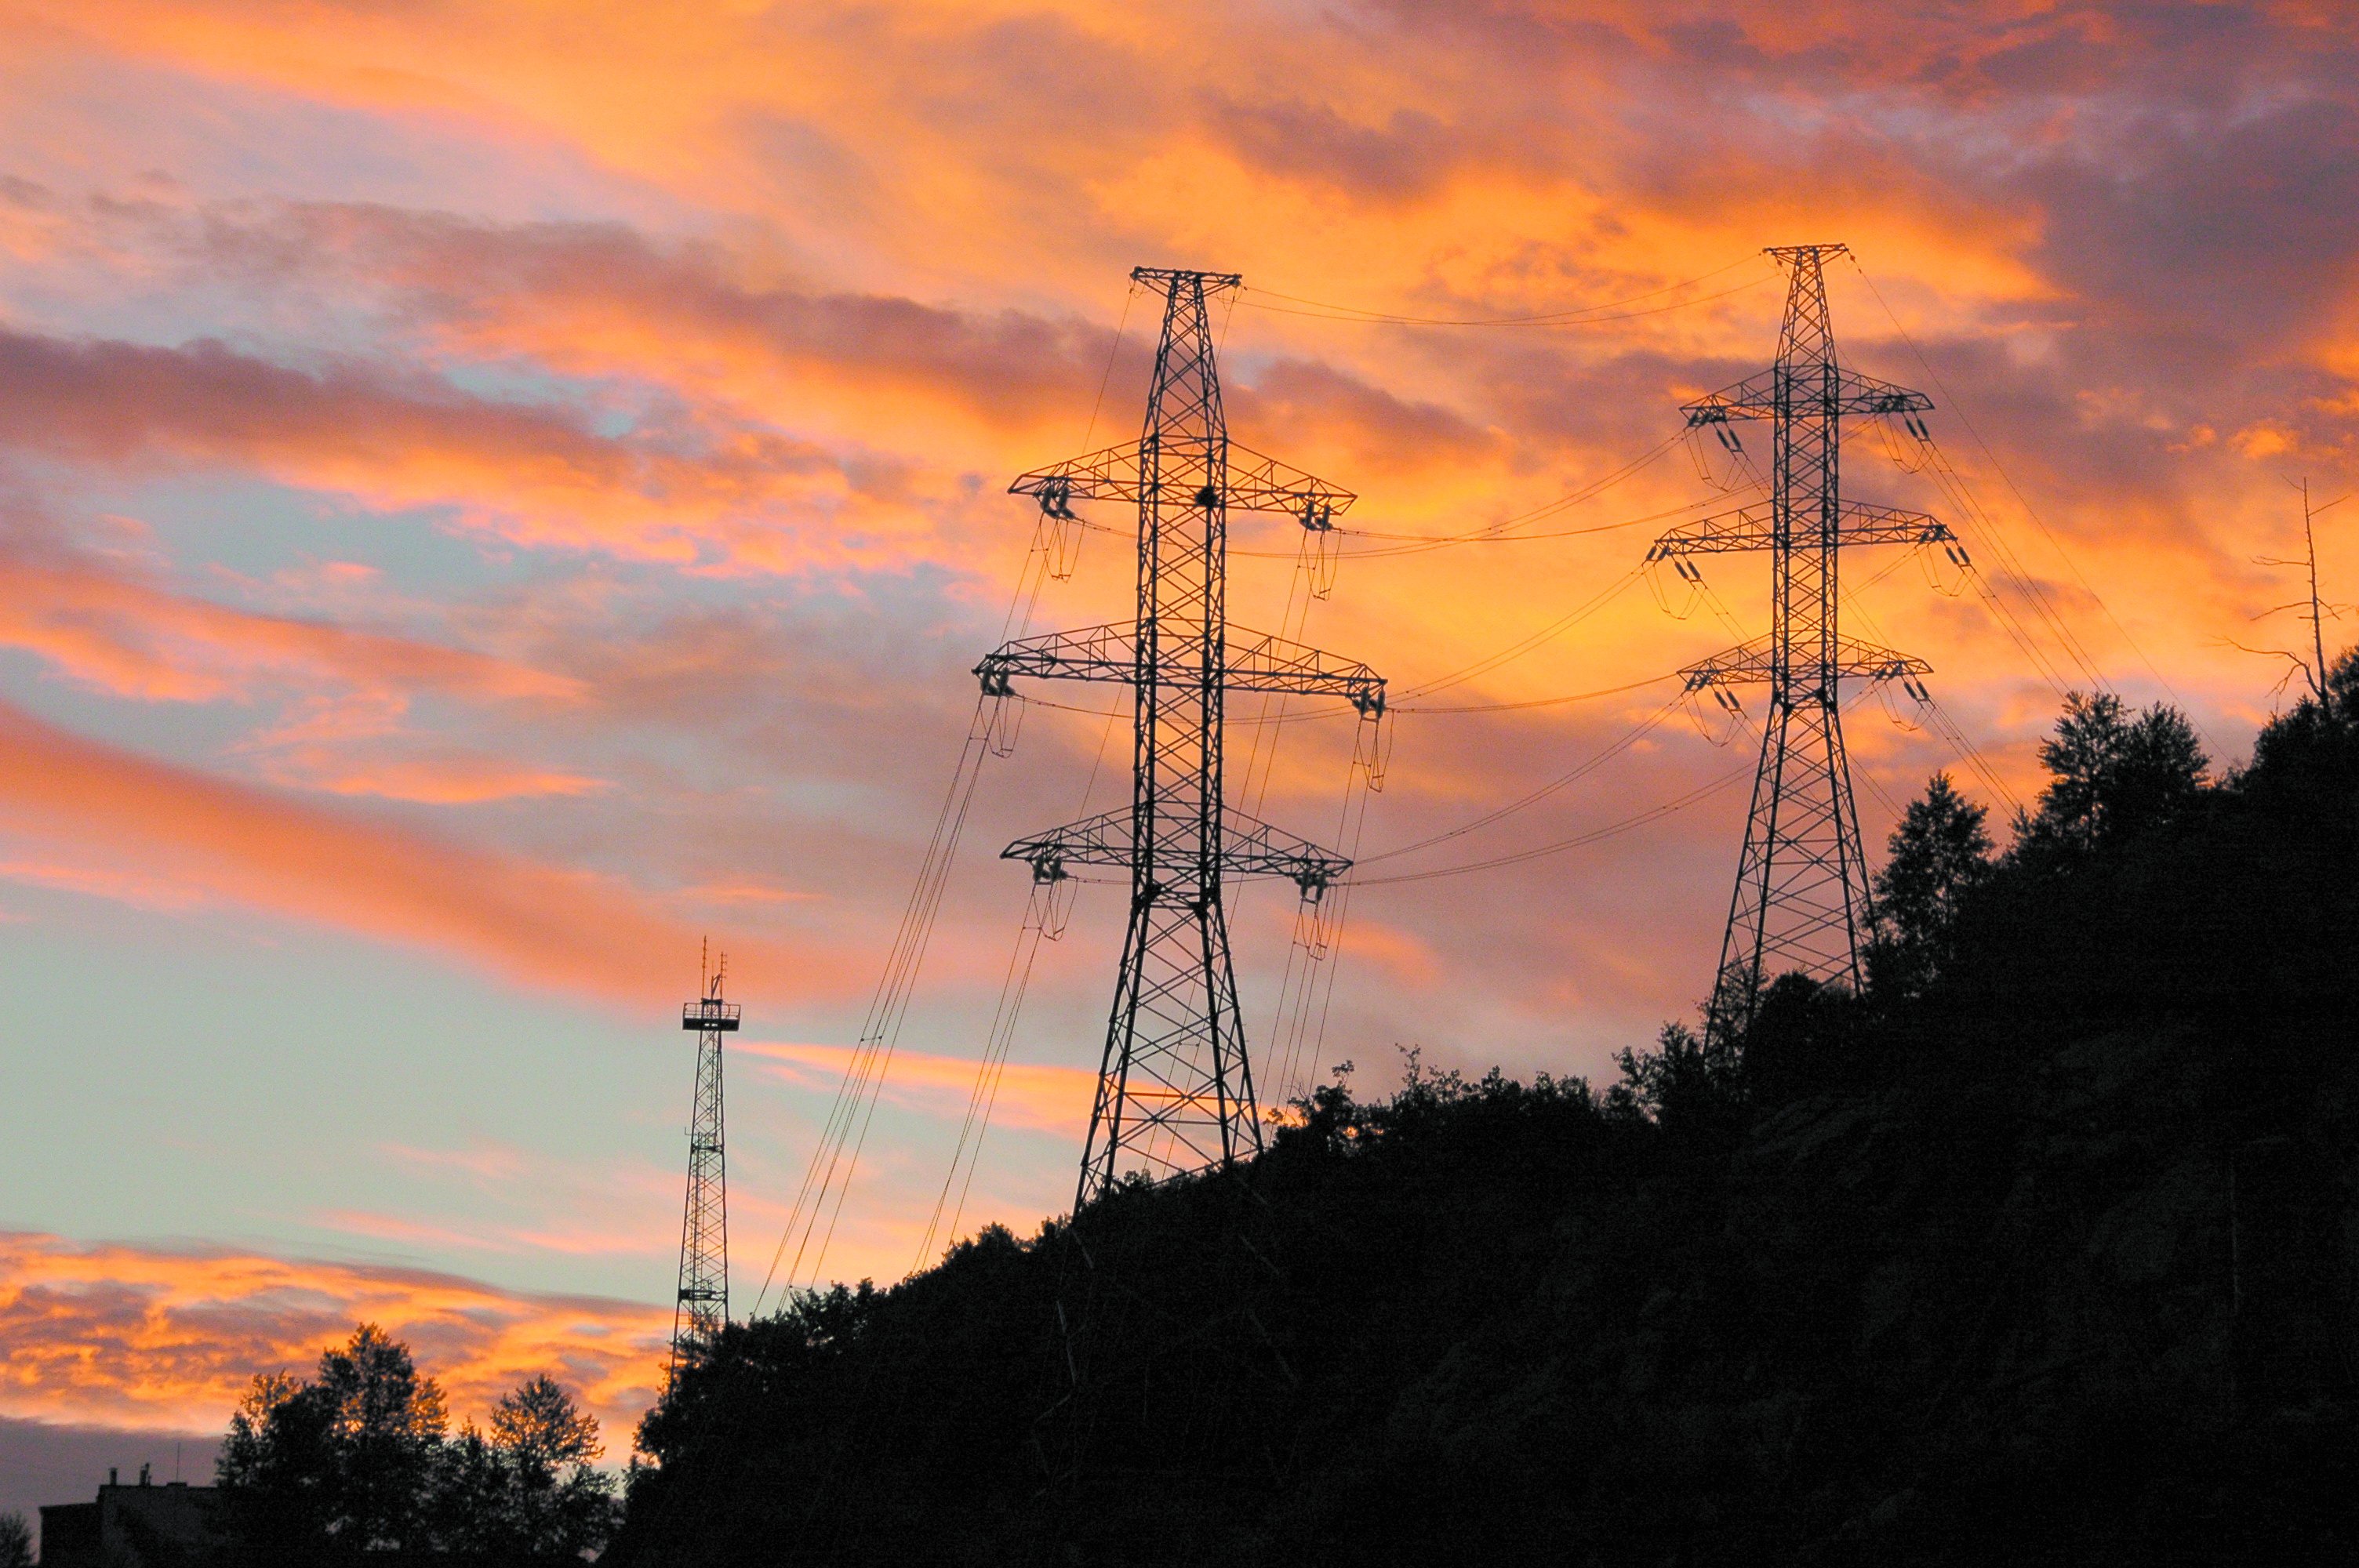 С 1 января 2019 года в Приамурье вырастут тарифы на электроэнергию / Тарифы на электроэнергию на 2019 год утвердило правительство Амурской области. Повышение стоимости услуги будет проходить в два этапа — в январе и июле. 